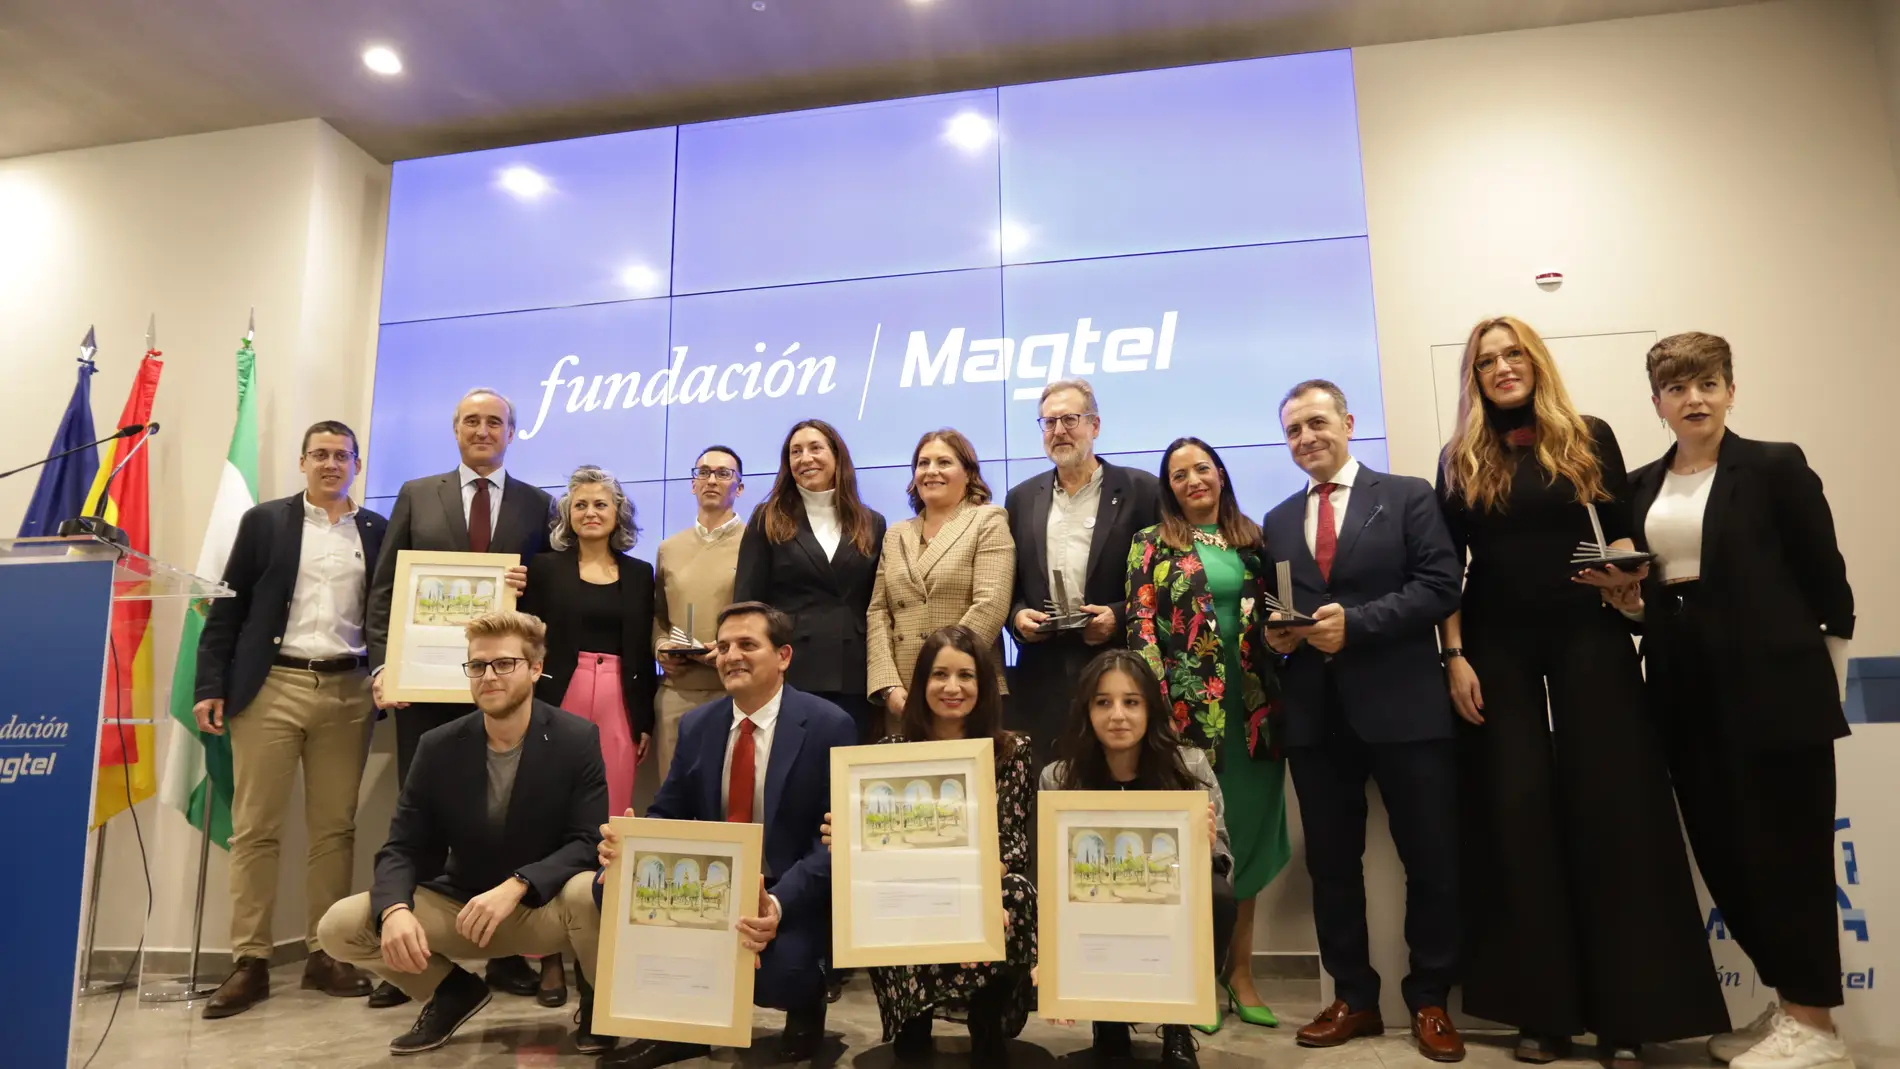 La Fundación Magtel entrega sus premios a las mejores iniciativas en acción social